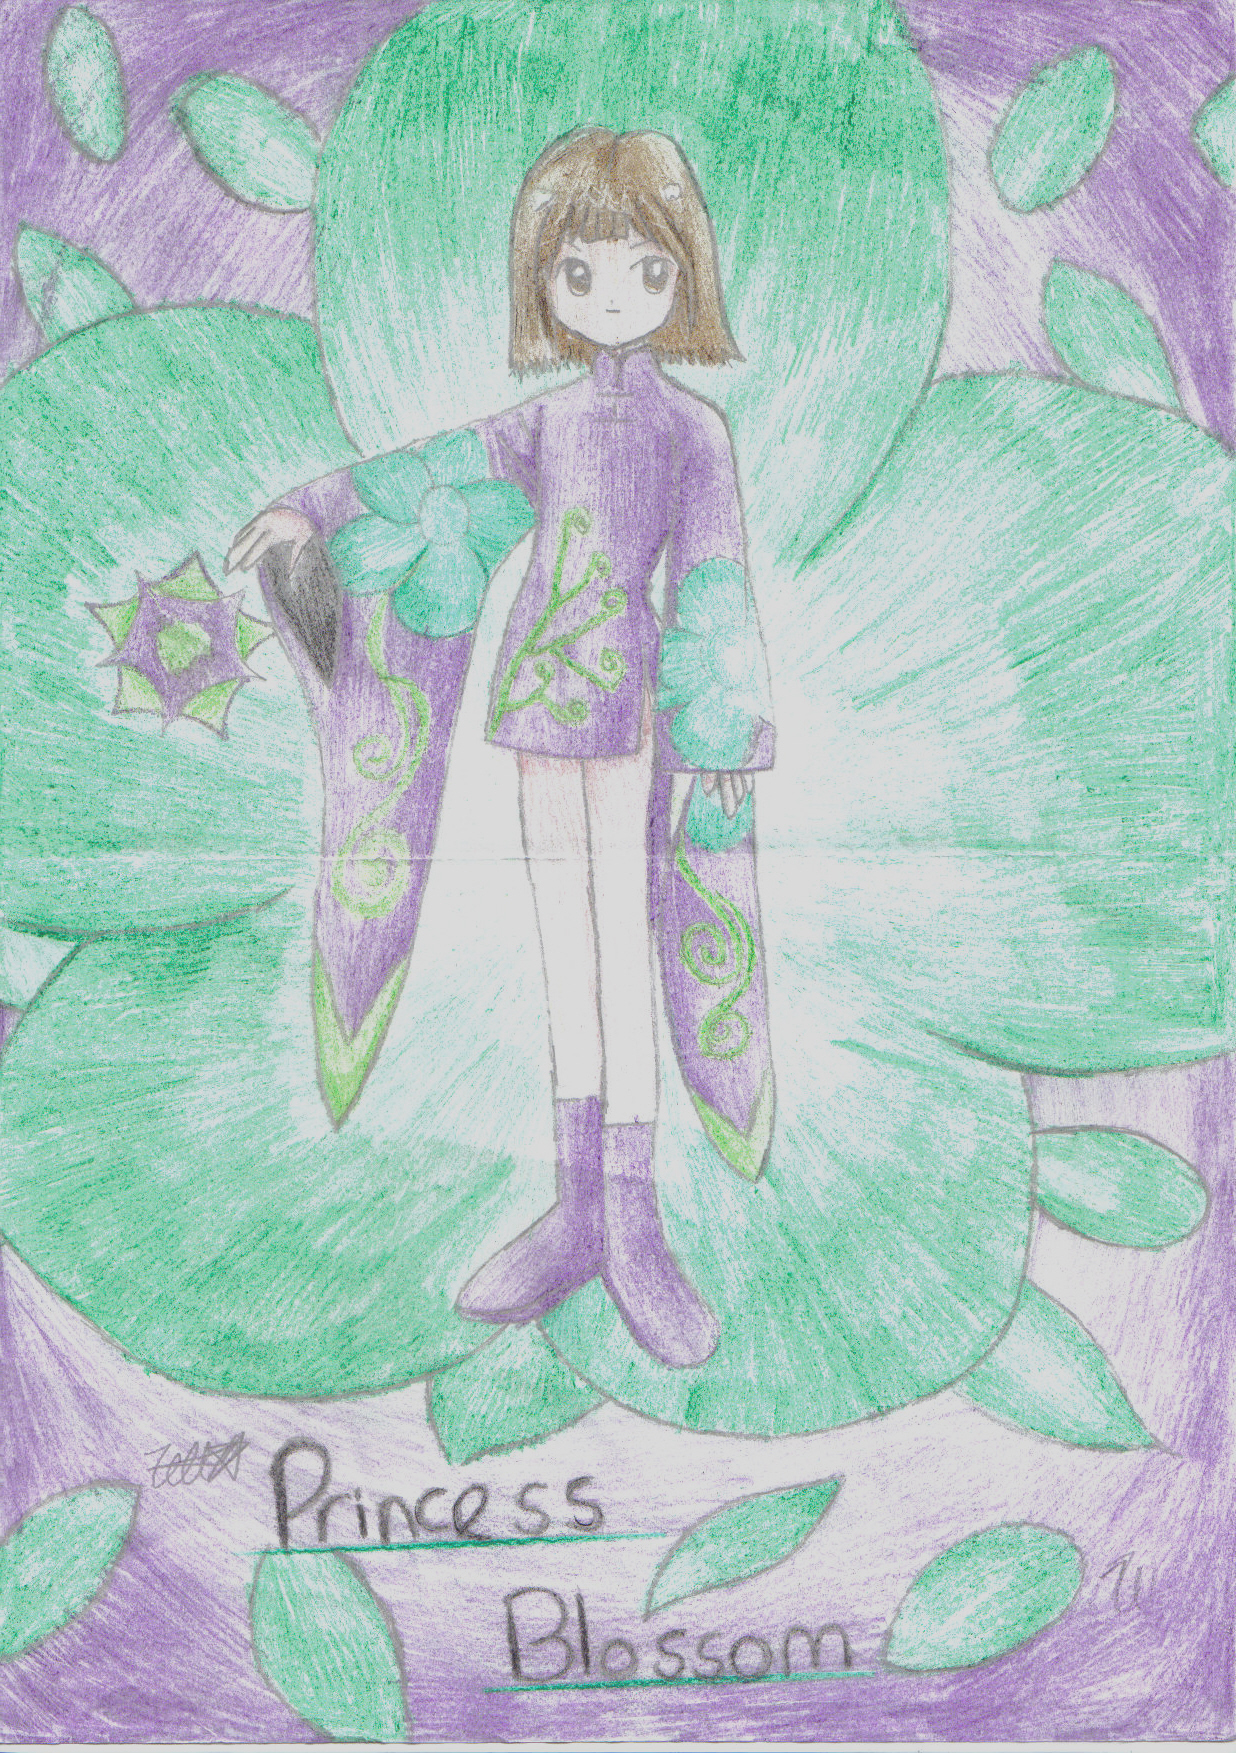 Hana as Princess Blossom by Cherryblossomfairy